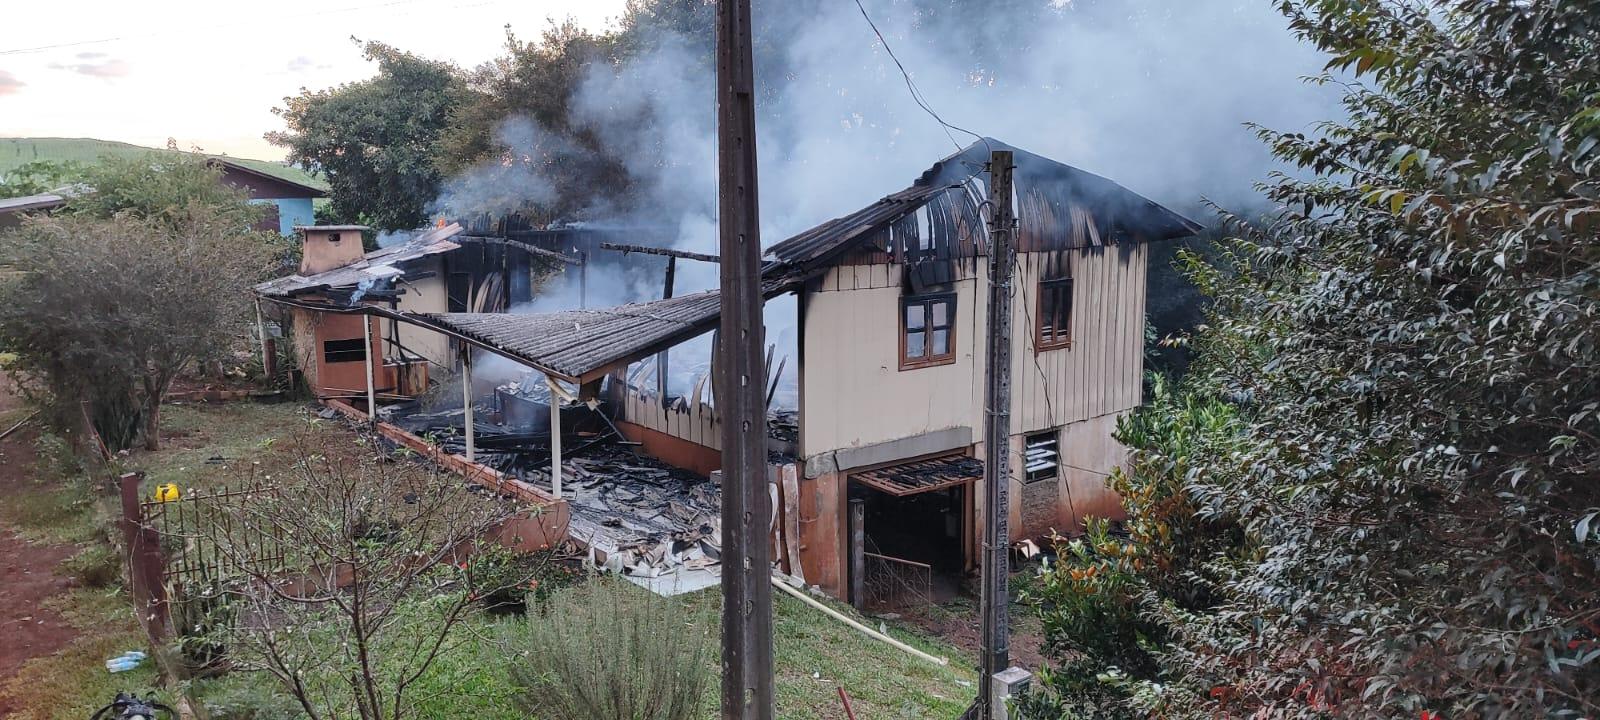 Casa unifamiliar no interior de Quilombo é totalmente consumida pelo fogo